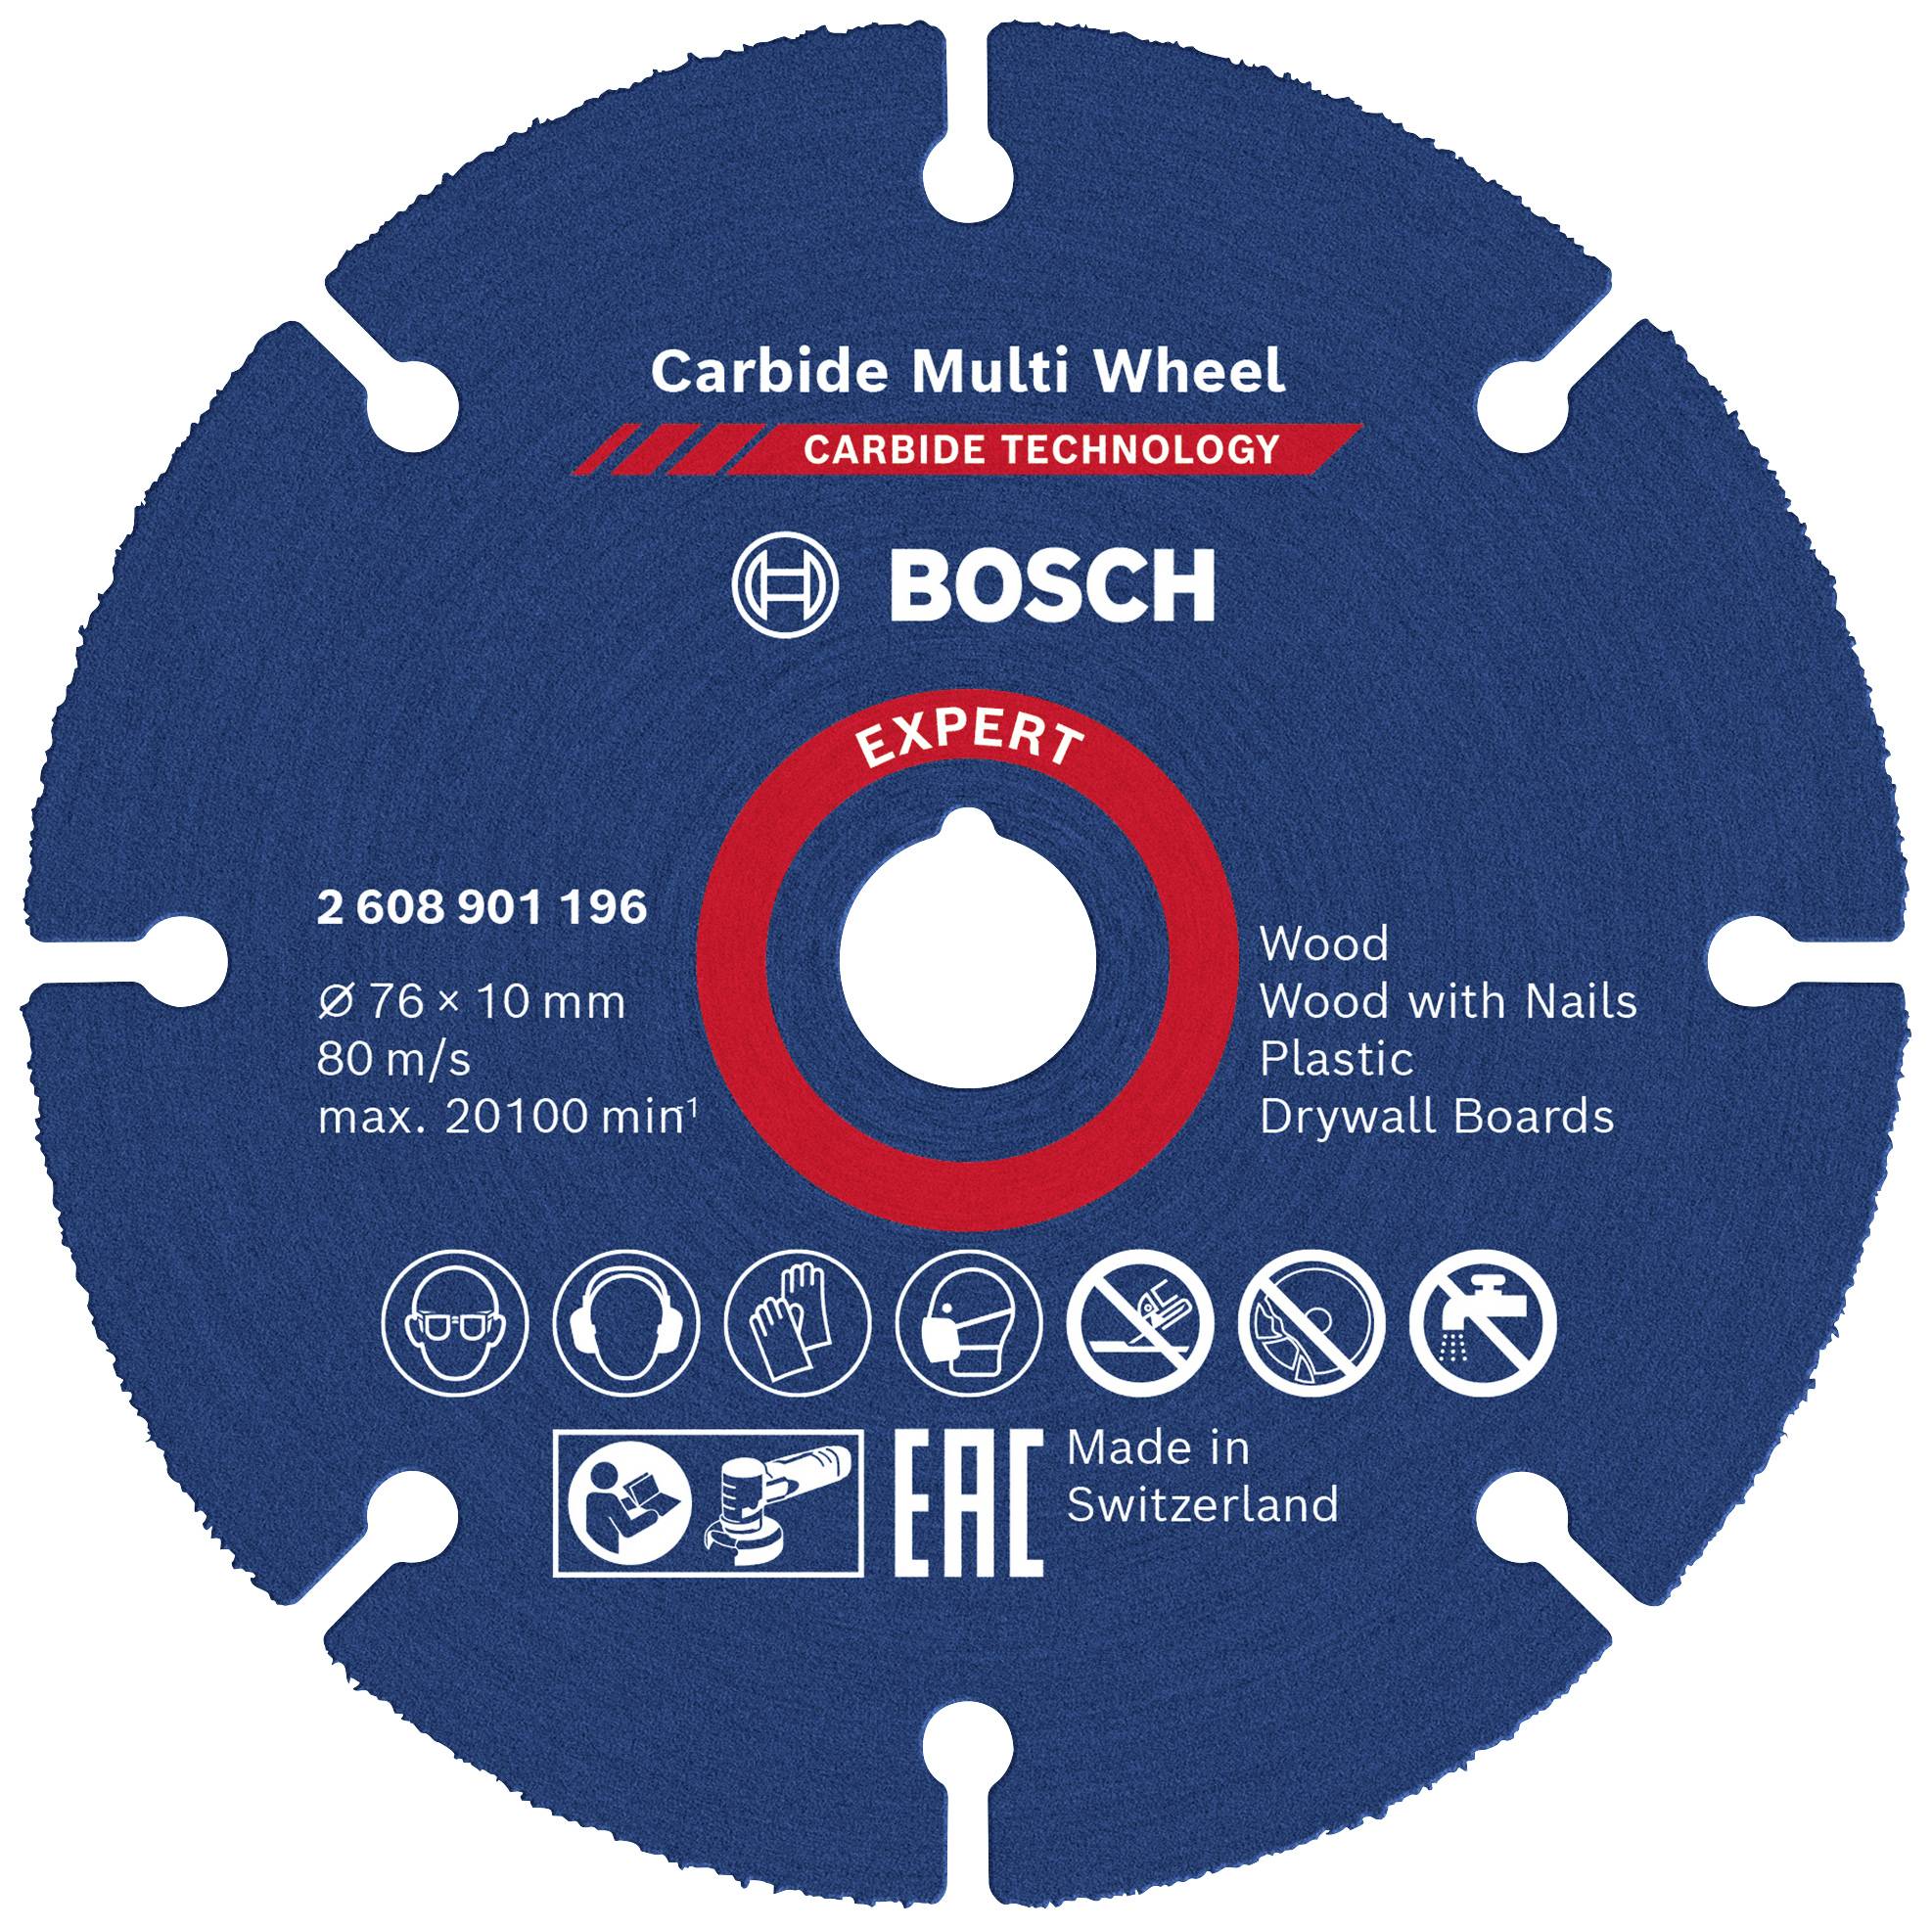 BOSCH Accessories EXPERT Carbide Multi Wheel 2608901196 Trennscheibe gerade 1 Stück 76 mm 10 mm